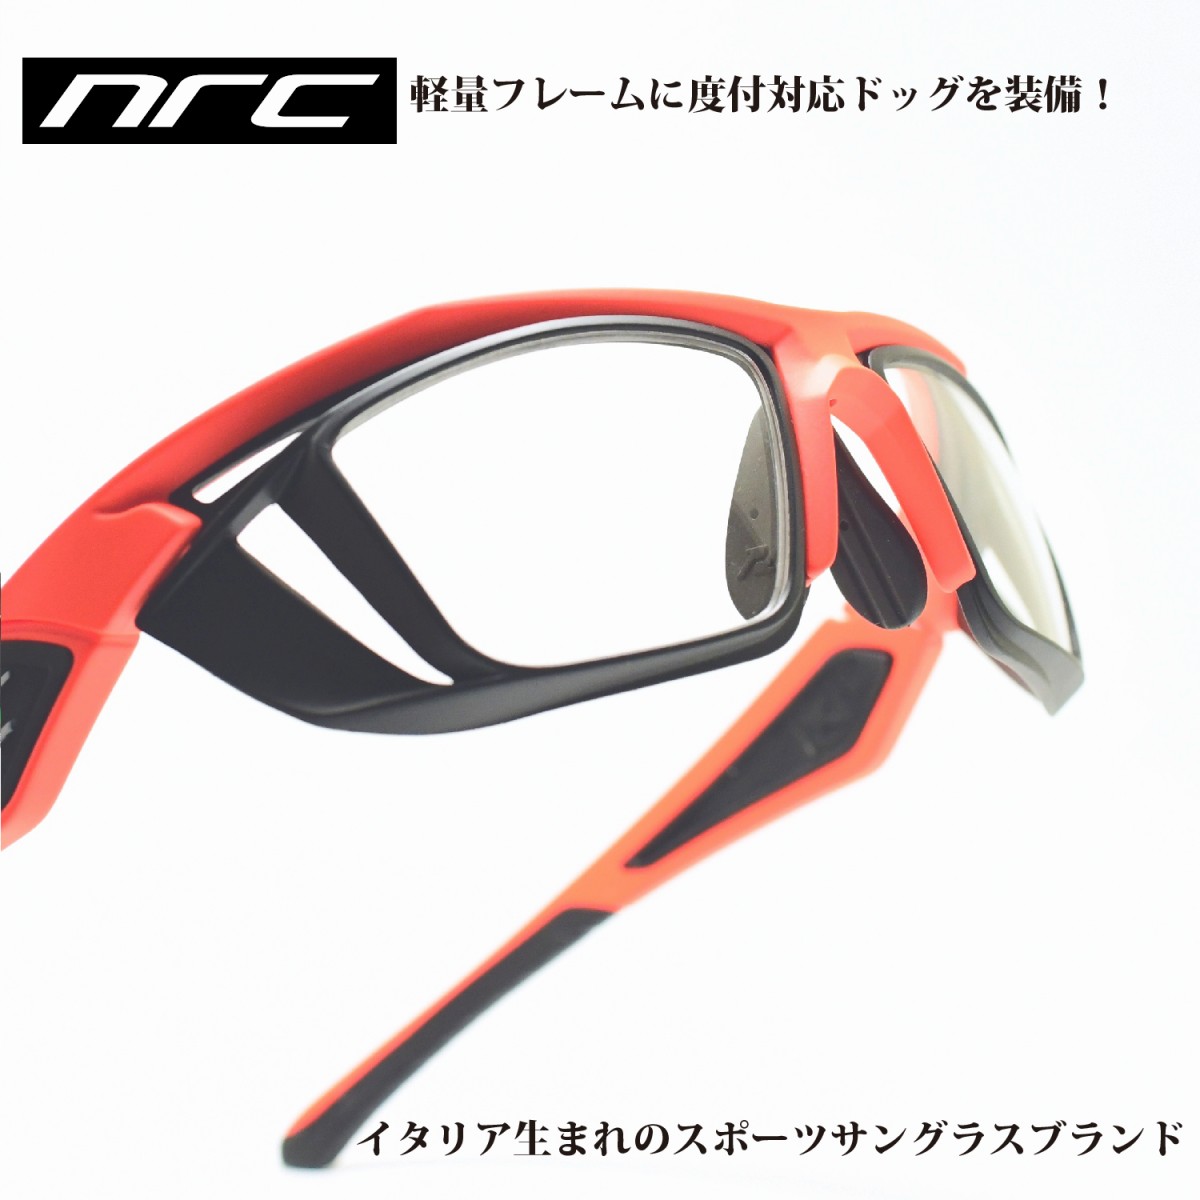 nrc エヌアールシー X5 DOC SACROMONRE/OPTICAL DOC メガネ 眼鏡 めがね メンズ レディース おしゃれ